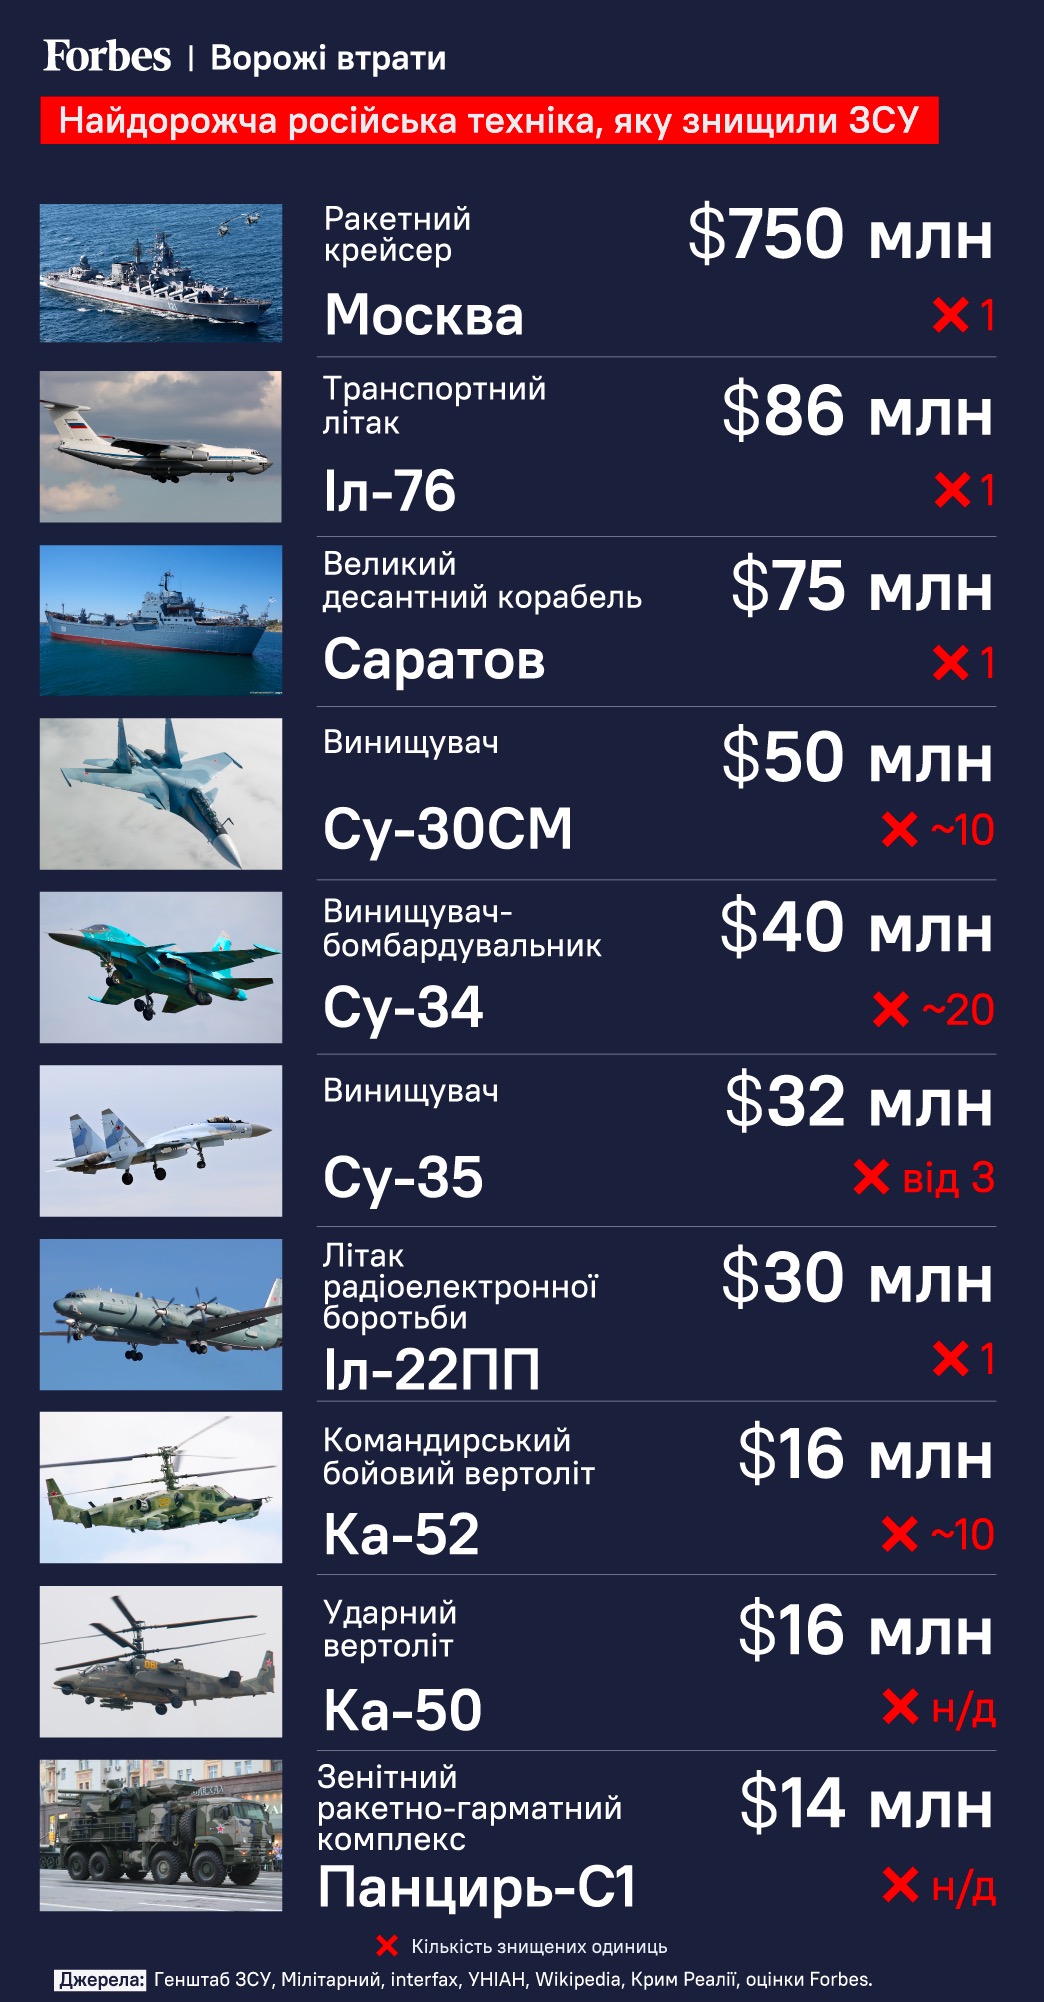 Стоимость подбитого крейсера «Москва» - $ 750 млн.  Forbes составил рейтинг самой дорогой российской техники, уничтоженной на войне / Фото 1